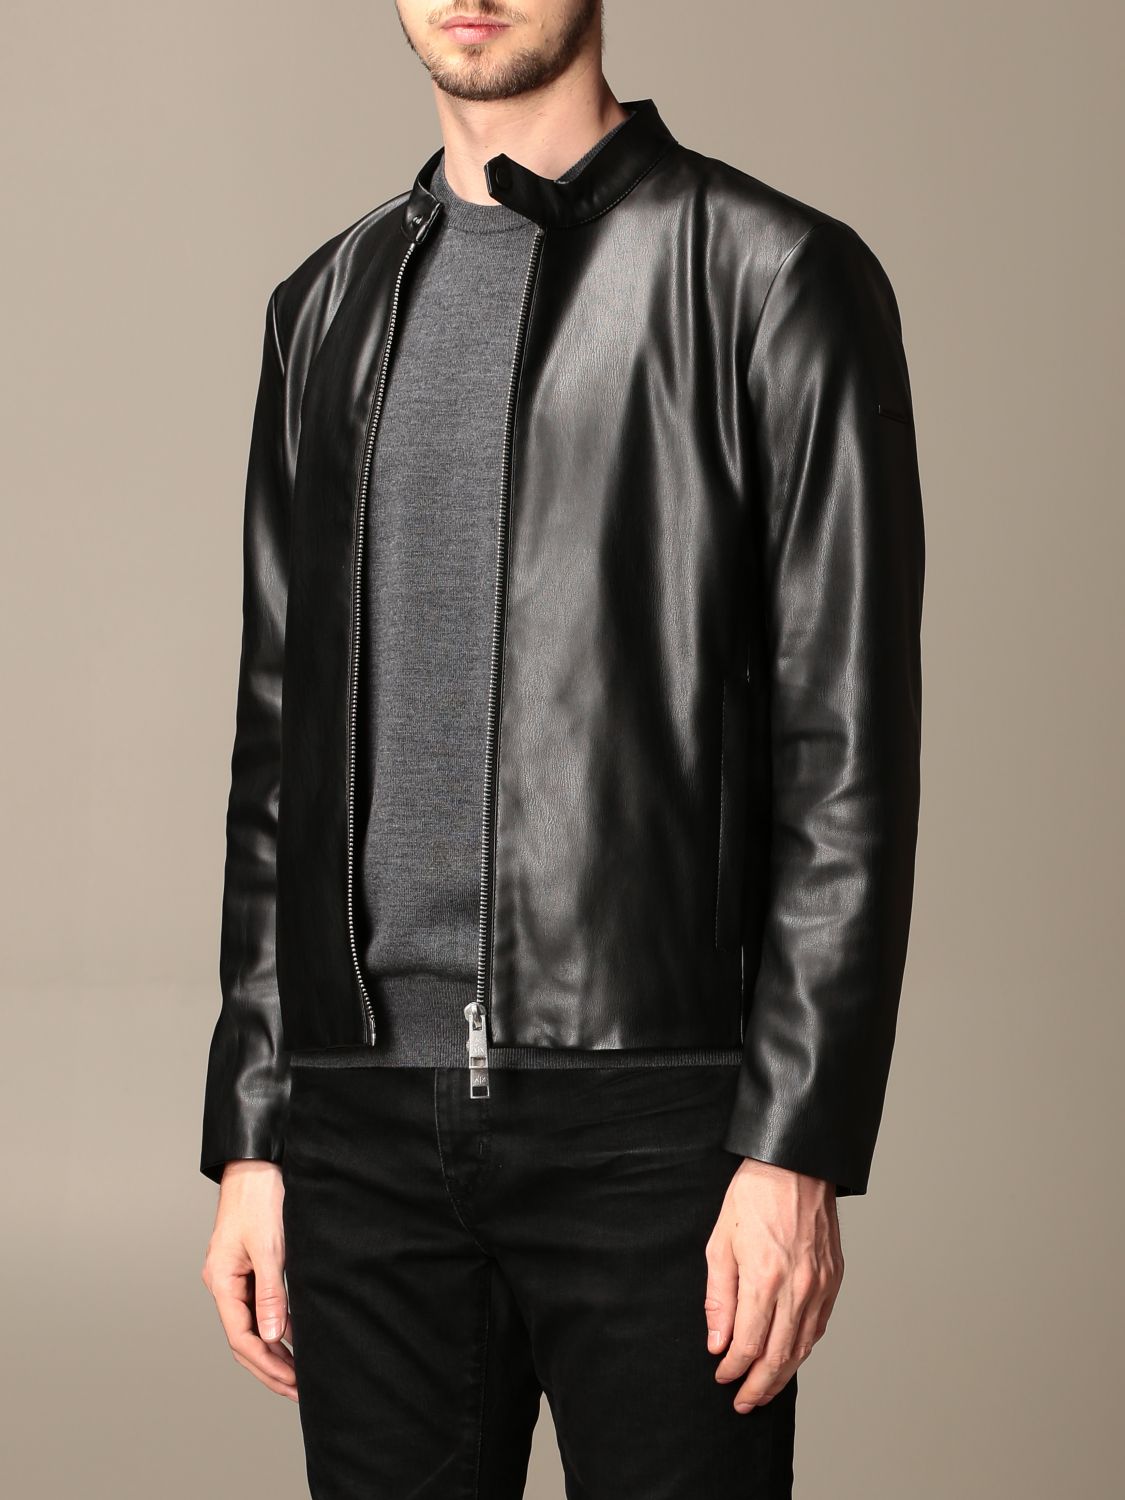 Black Armani Exchange Leather Jacket - Leather Jacket Jackets Mens ...